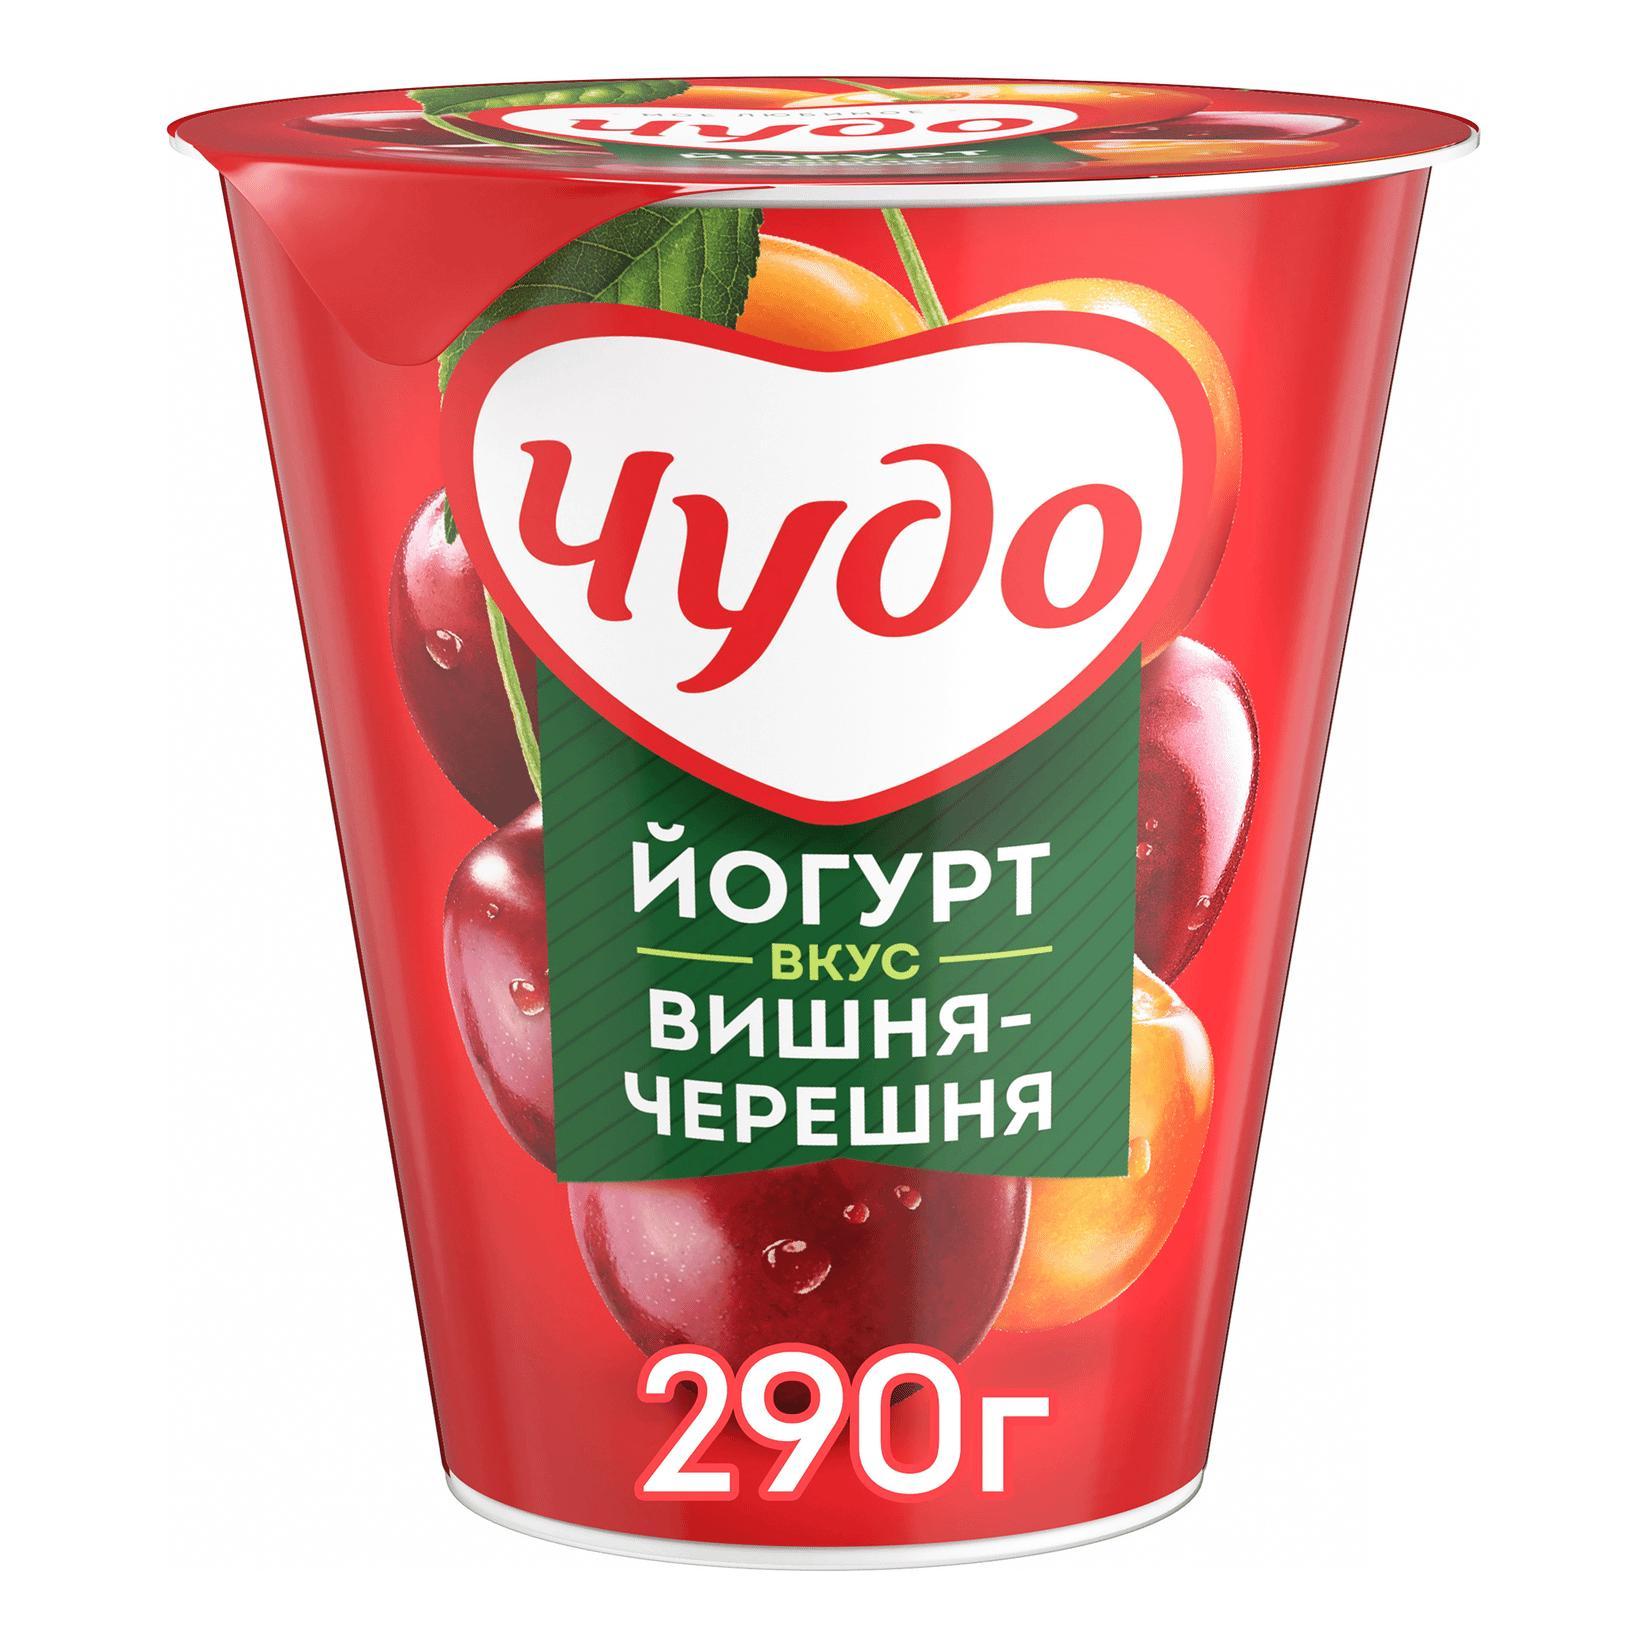 Йогурт Чудо вишня черешня 2% вязкий 290 гр., стакан